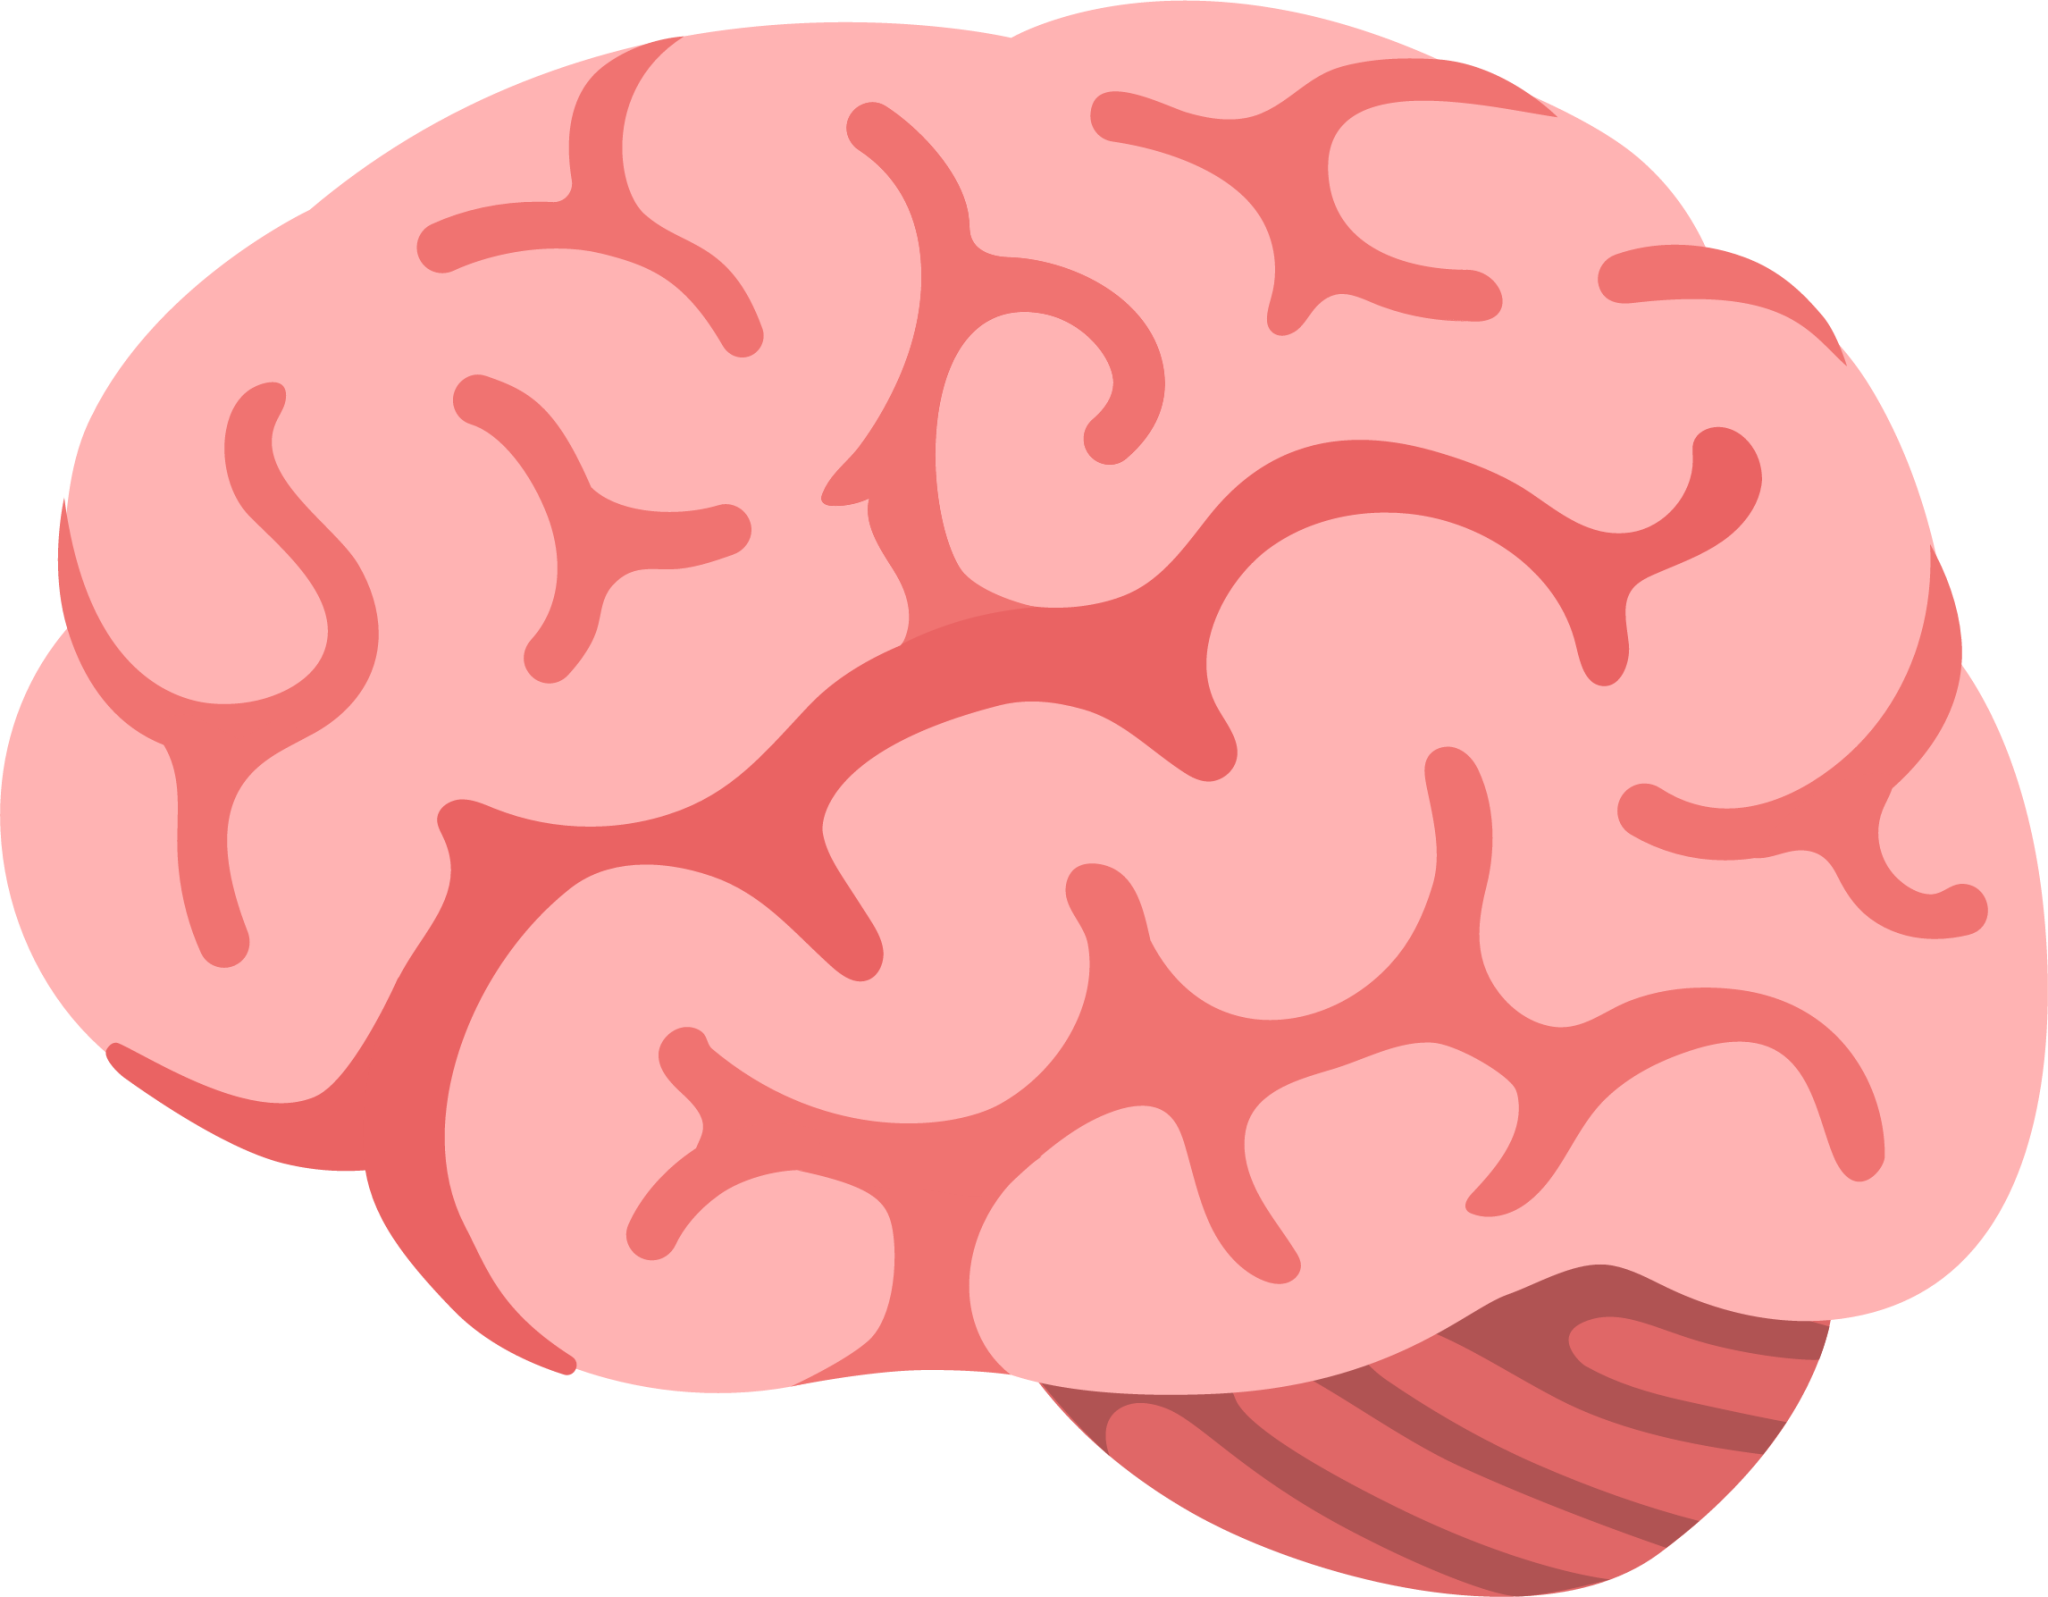 Brain emoji. ЭМОДЖИ мозг. Мозги без фона. Мозги смайлик. Мозг смайлик айфон.